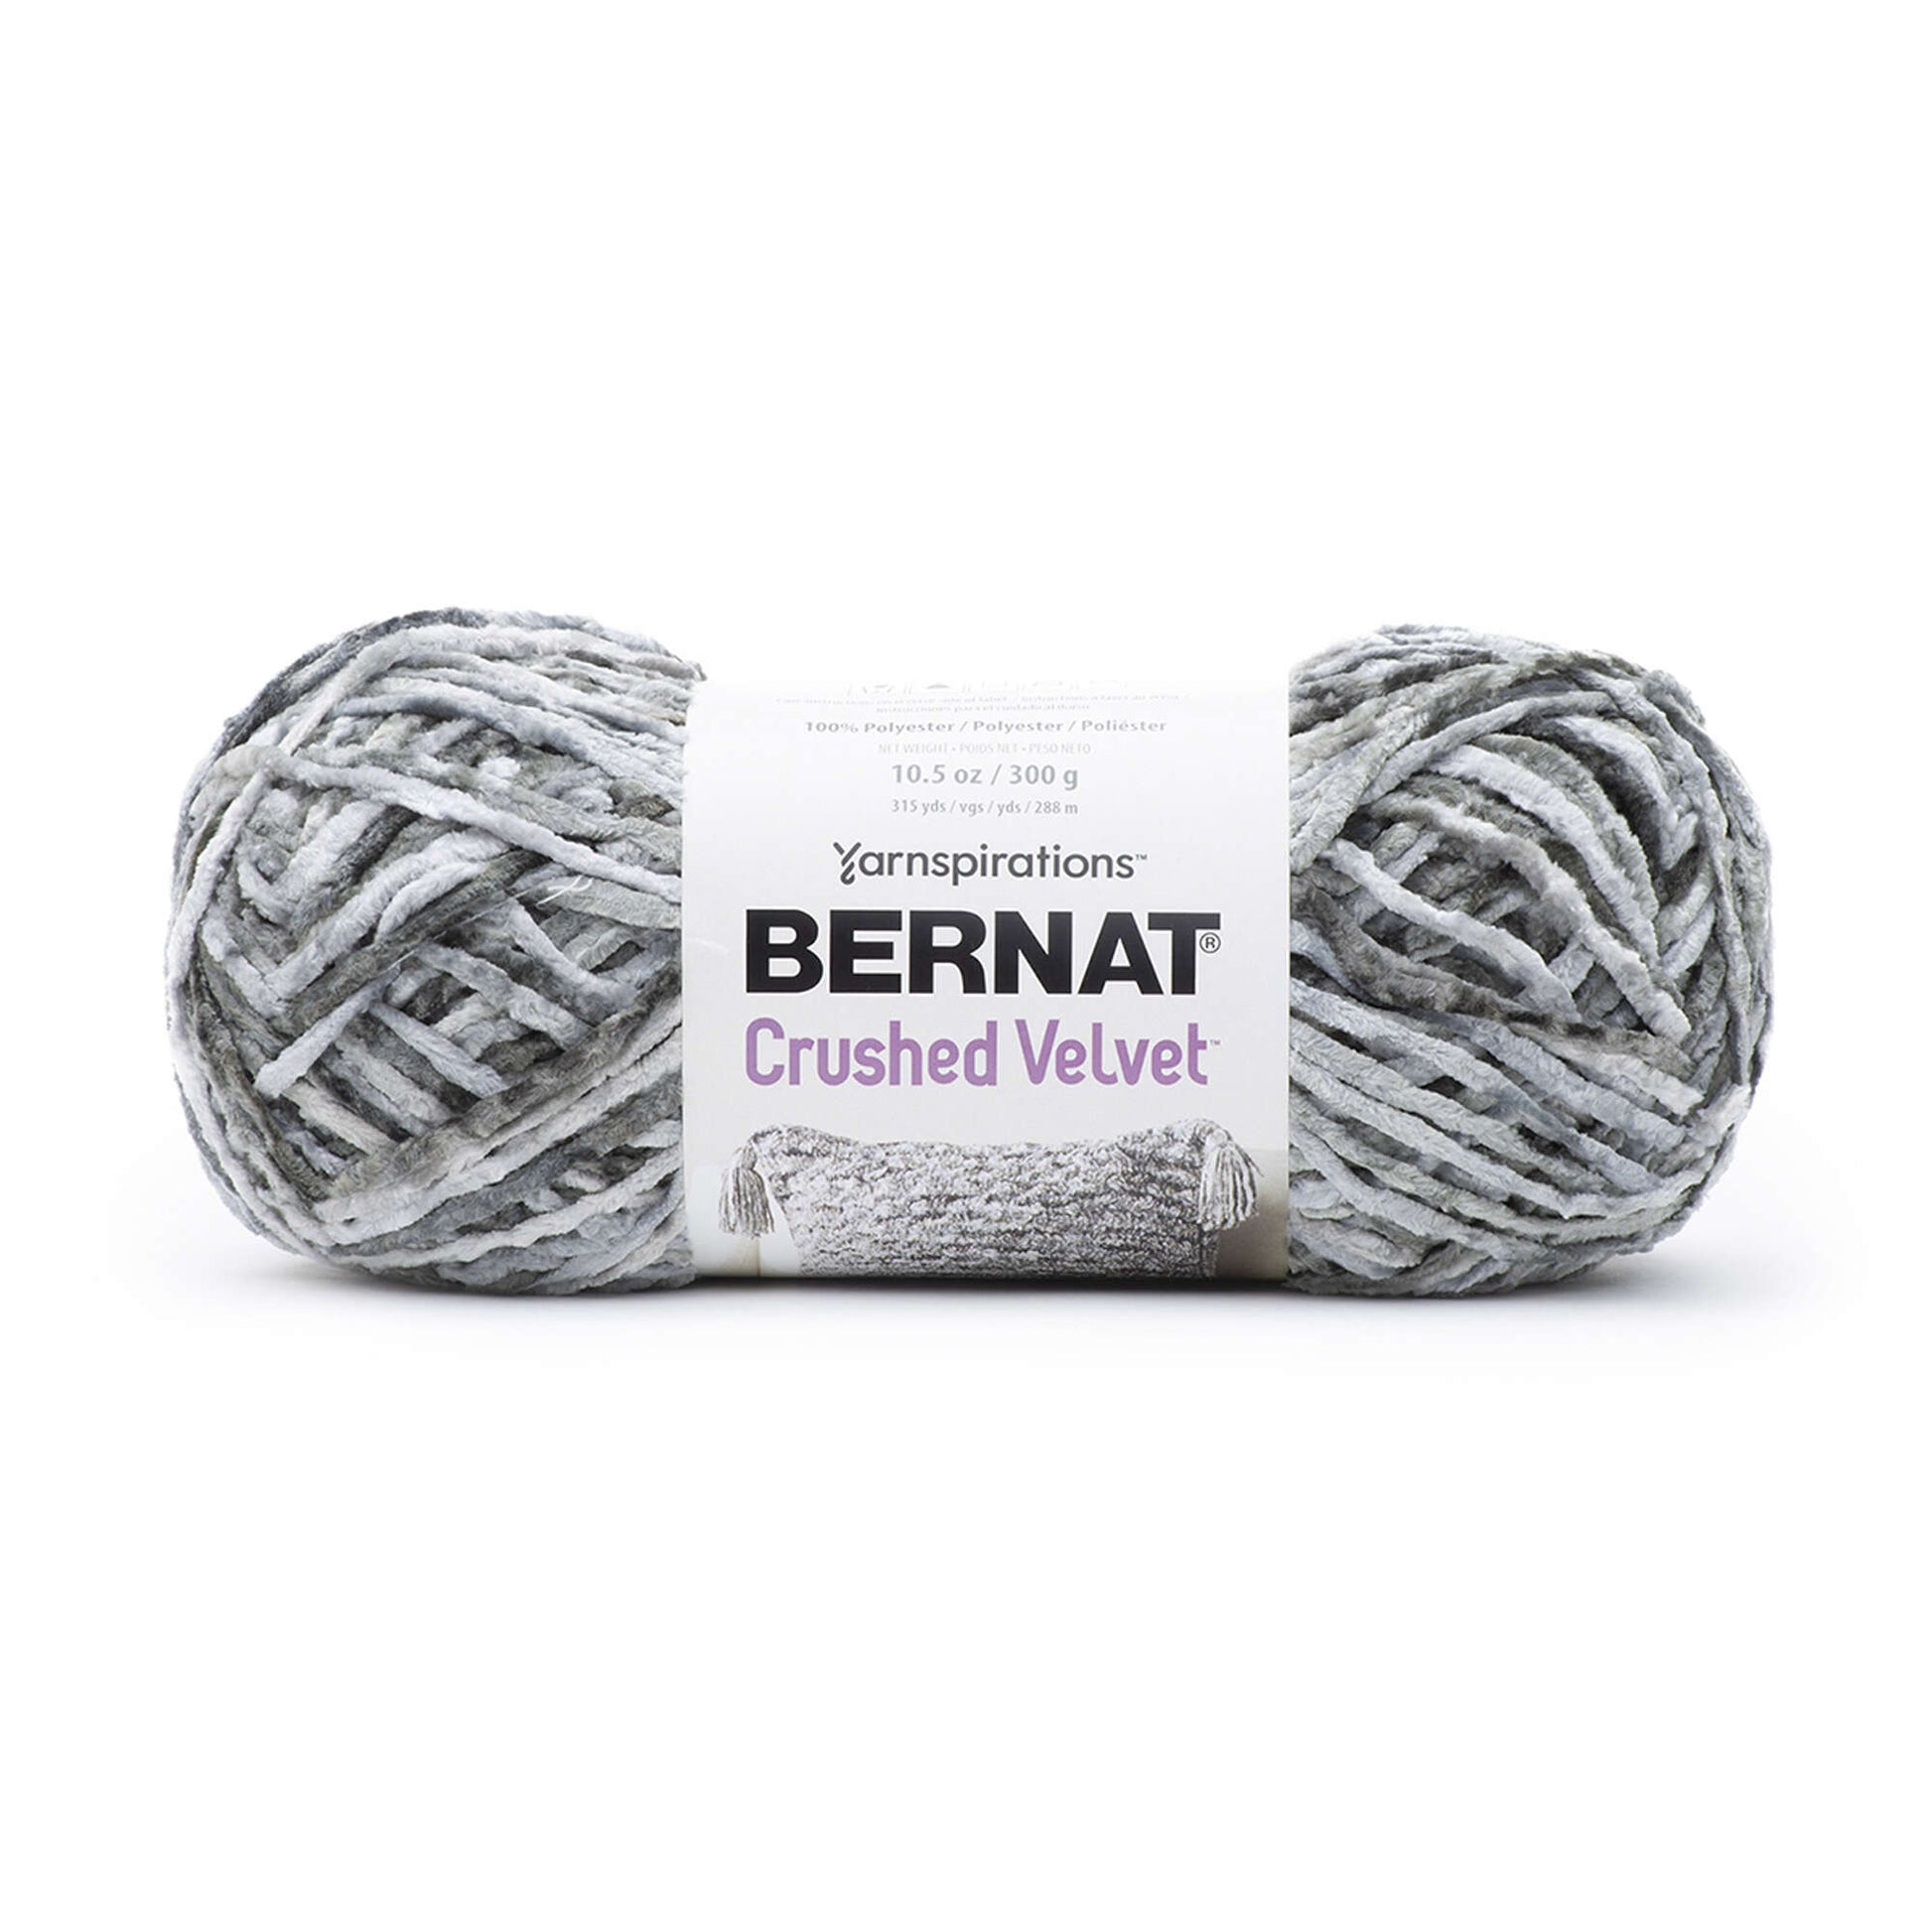 Bernat Crushed Velvet Yarn Soft Gray